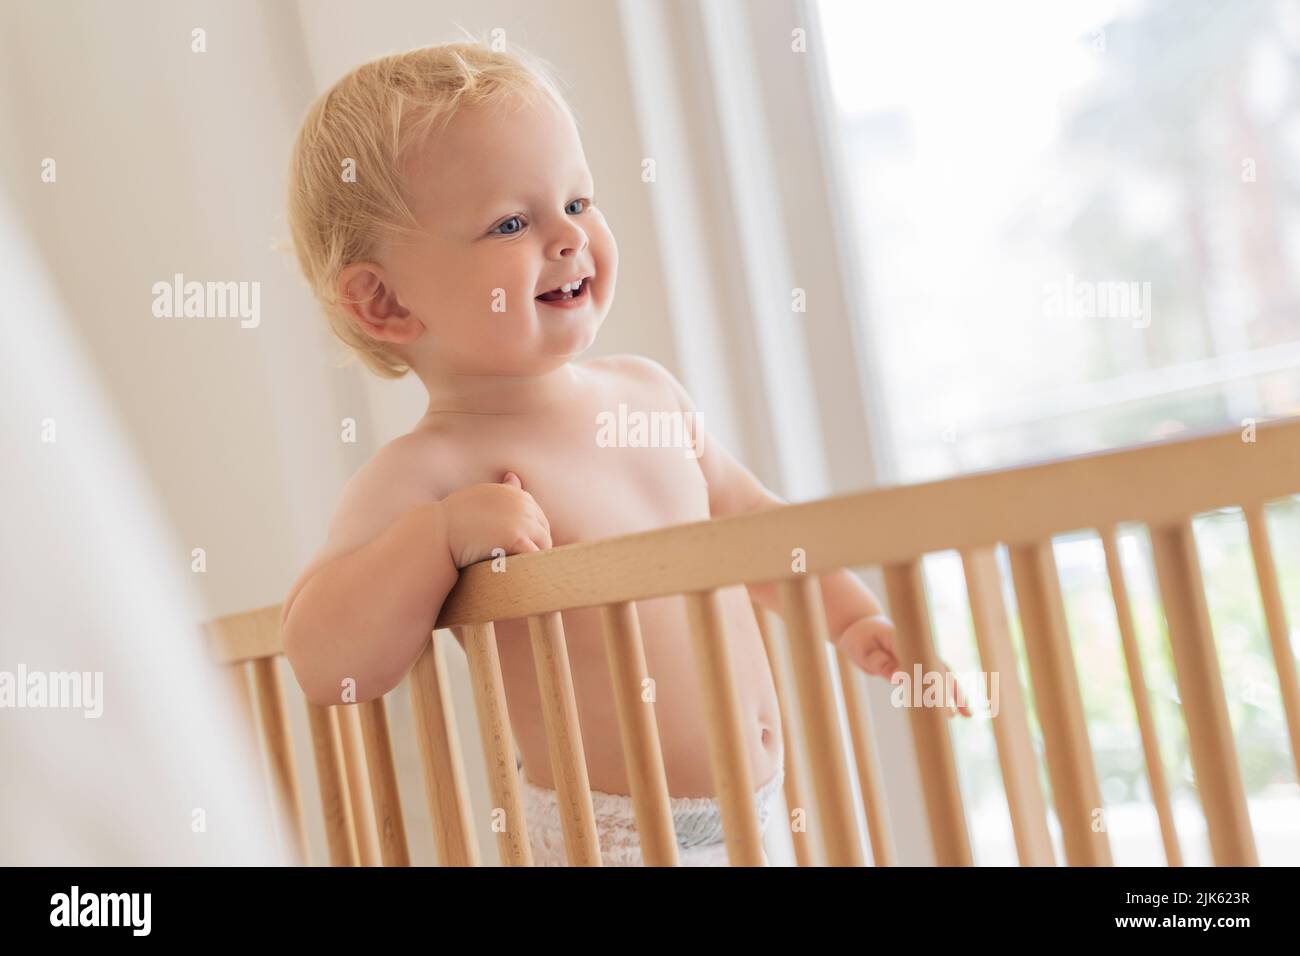 Indoor-Porträt von süßen kleinen Baby in Windel im Bett stehend versuchen zu gehen, lernen, den ersten Schritt halten an Stoßstangen auf Fensterhintergrund zu Hause zu tun Stockfoto